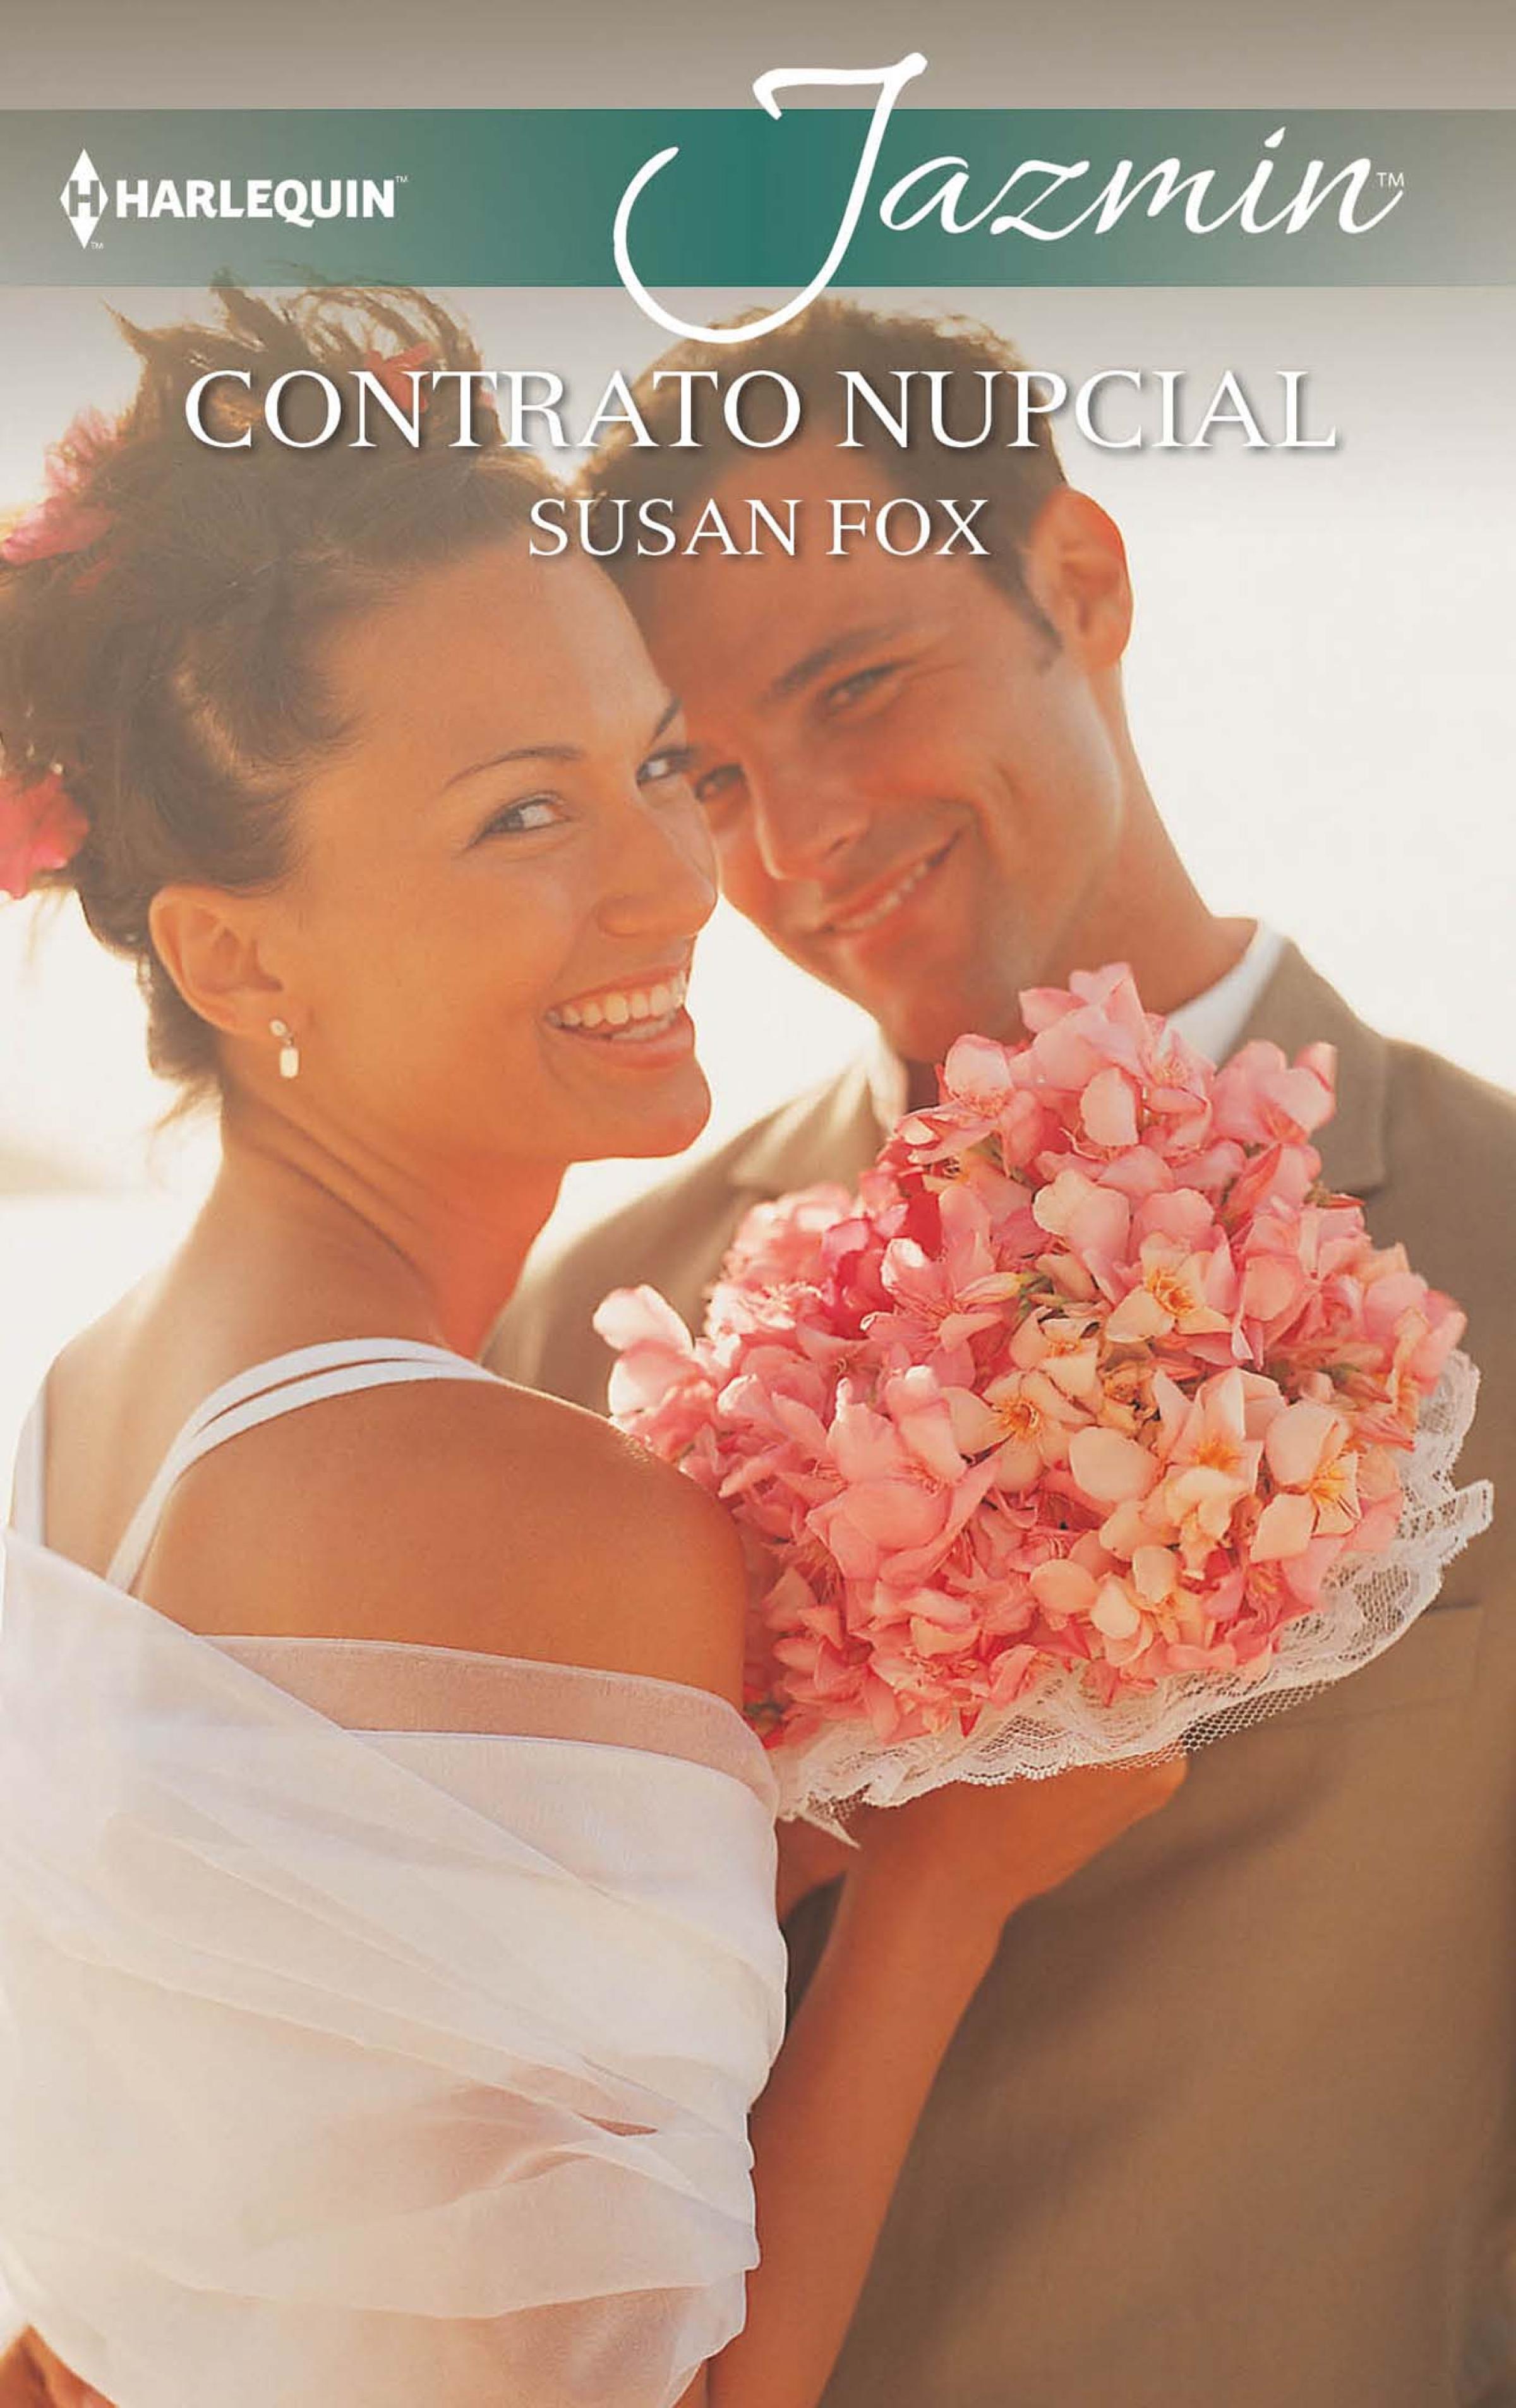 susan fox the bride prize Susan Fox Contrato nupcial.